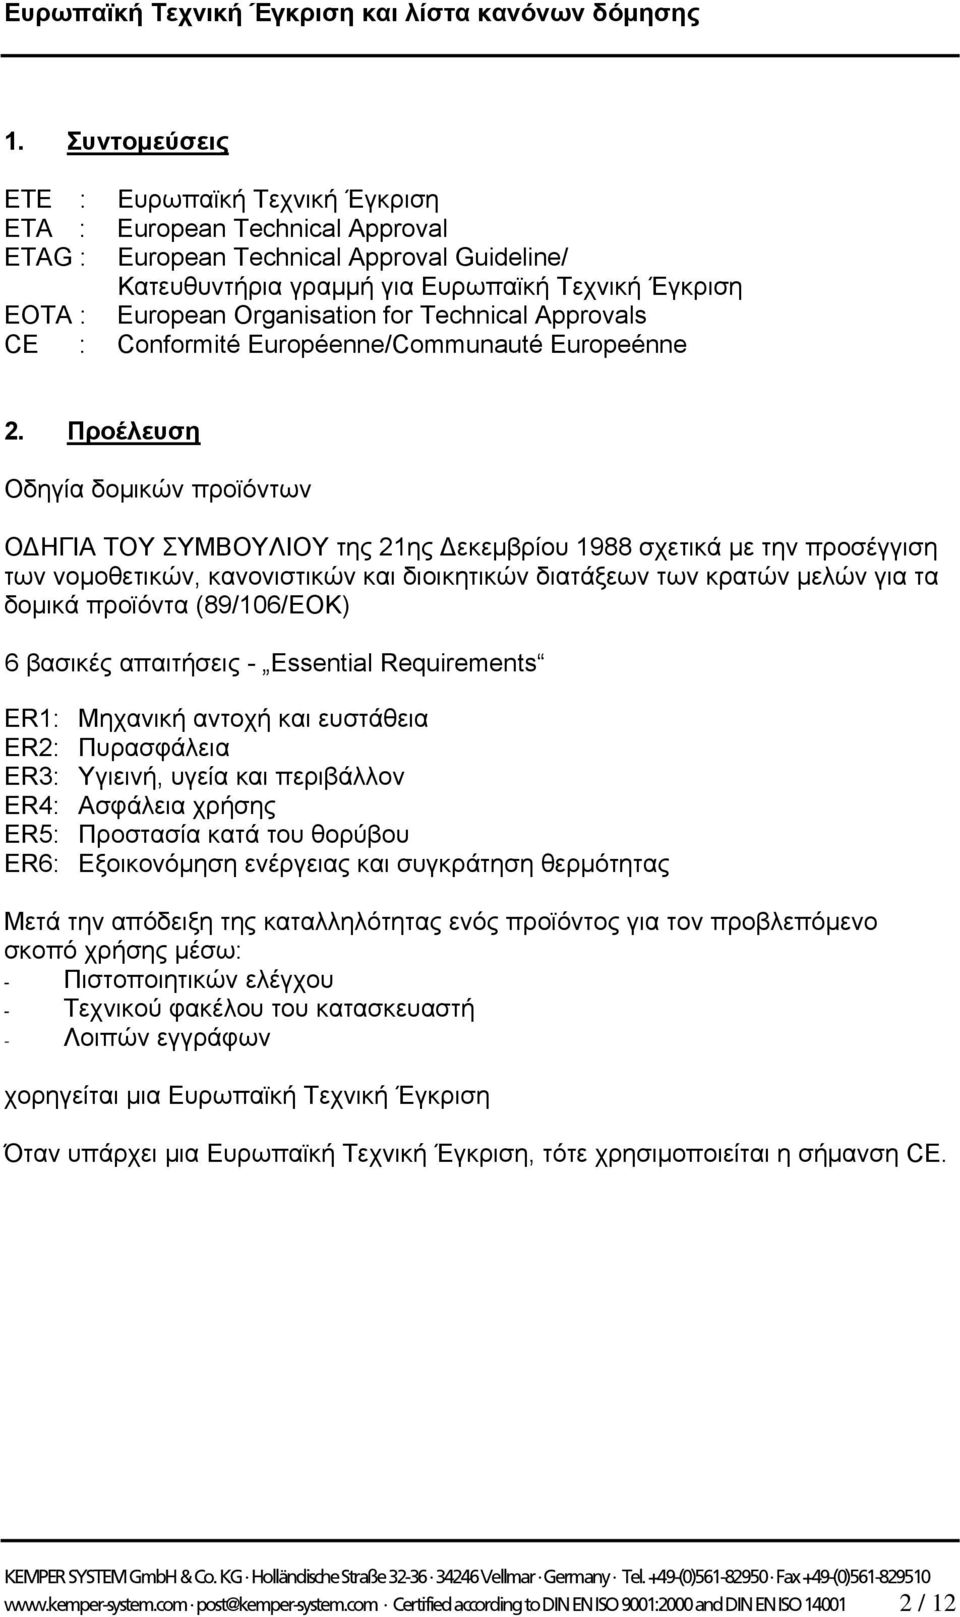 Προέλευση Οδηγία δομικών προϊόντων ΟΔΗΓΙΑ ΤΟΥ ΣΥΜΒΟΥΛΙΟΥ της 21ης Δεκεμβρίου 1988 σχετικά με την προσέγγιση των νομοθετικών, κανονιστικών και διοικητικών διατάξεων των κρατών μελών για τα δομικά